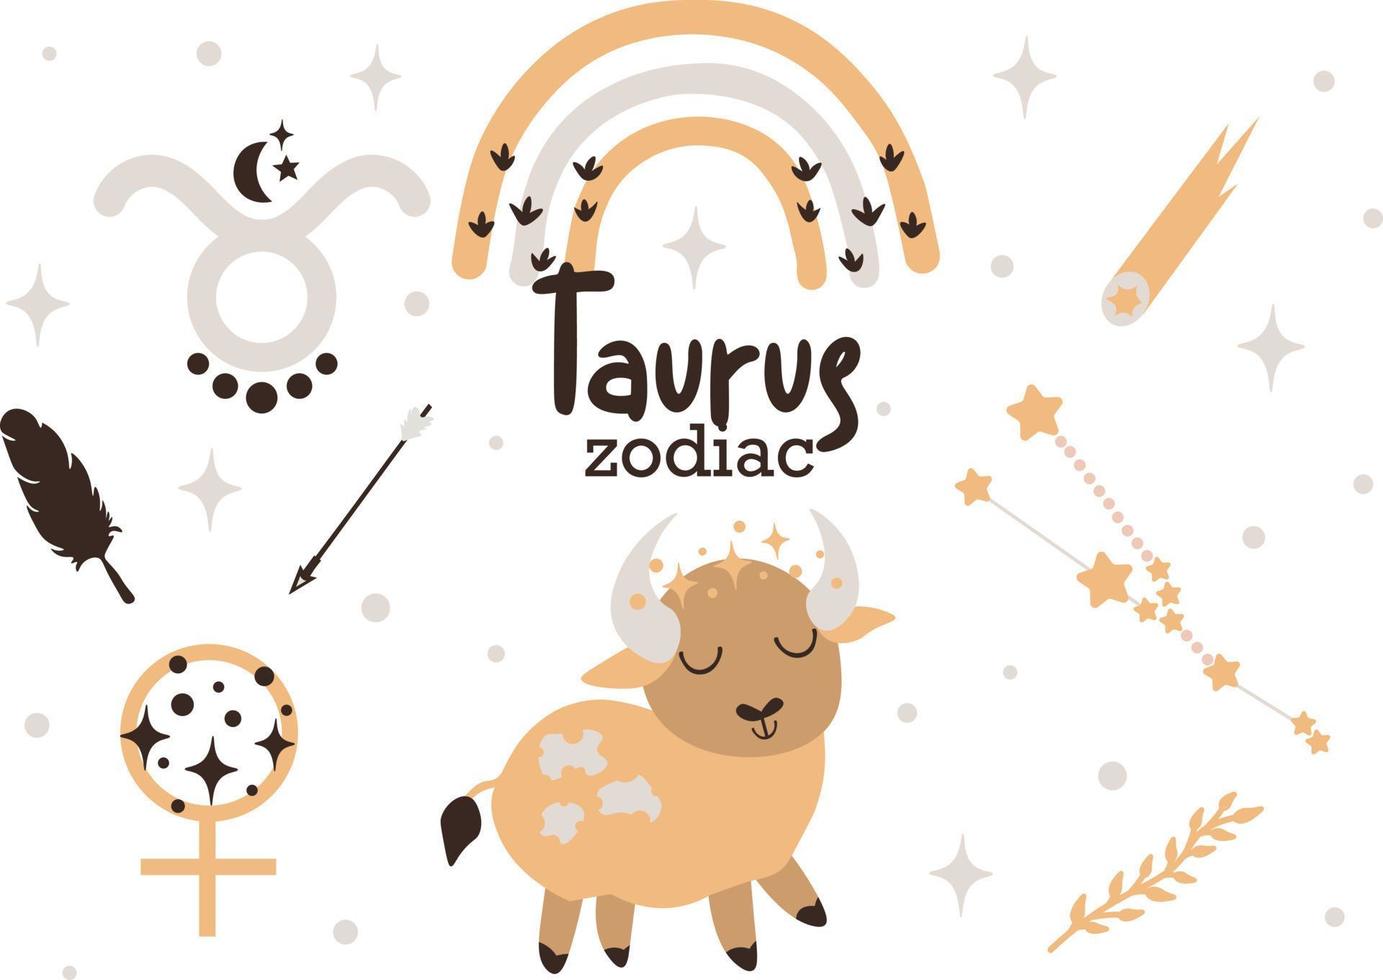 taurus bebis zodiaken tecken ClipArt - söt barn horoskop, zodiaken stjärnor, konstellation, regnbåge, planet, löv, pil och komet isolerat vektor illustration på vit bakgrund.